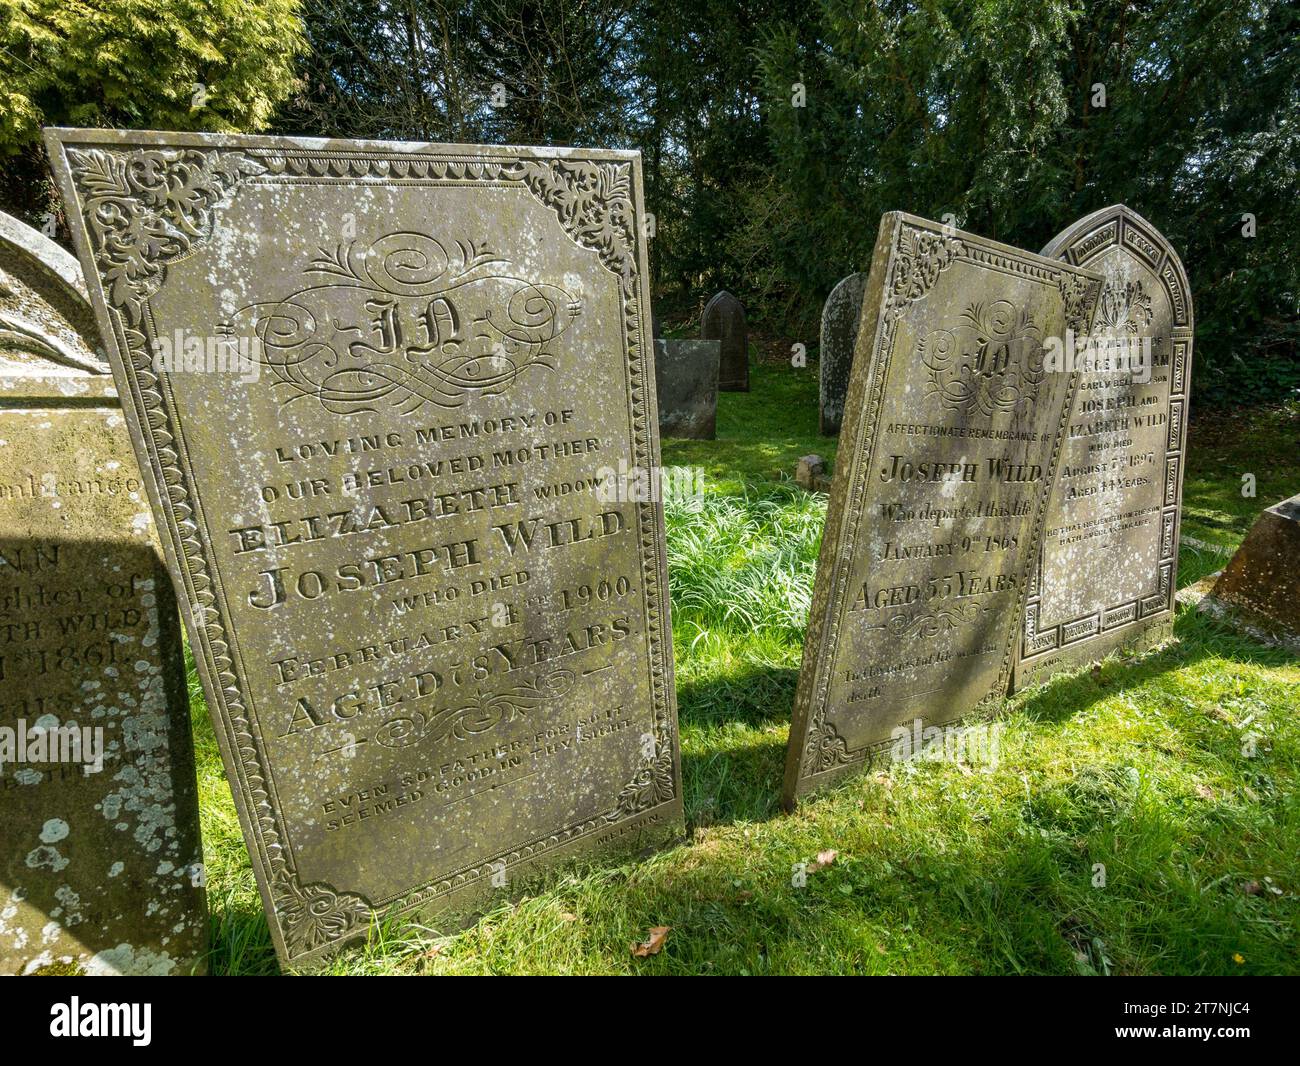 Vieilles pierres tombales en ardoise avec inscriptions gravées ornées, église Little Dalby, Leicestershire, Angleterre, Royaume-Uni Banque D'Images